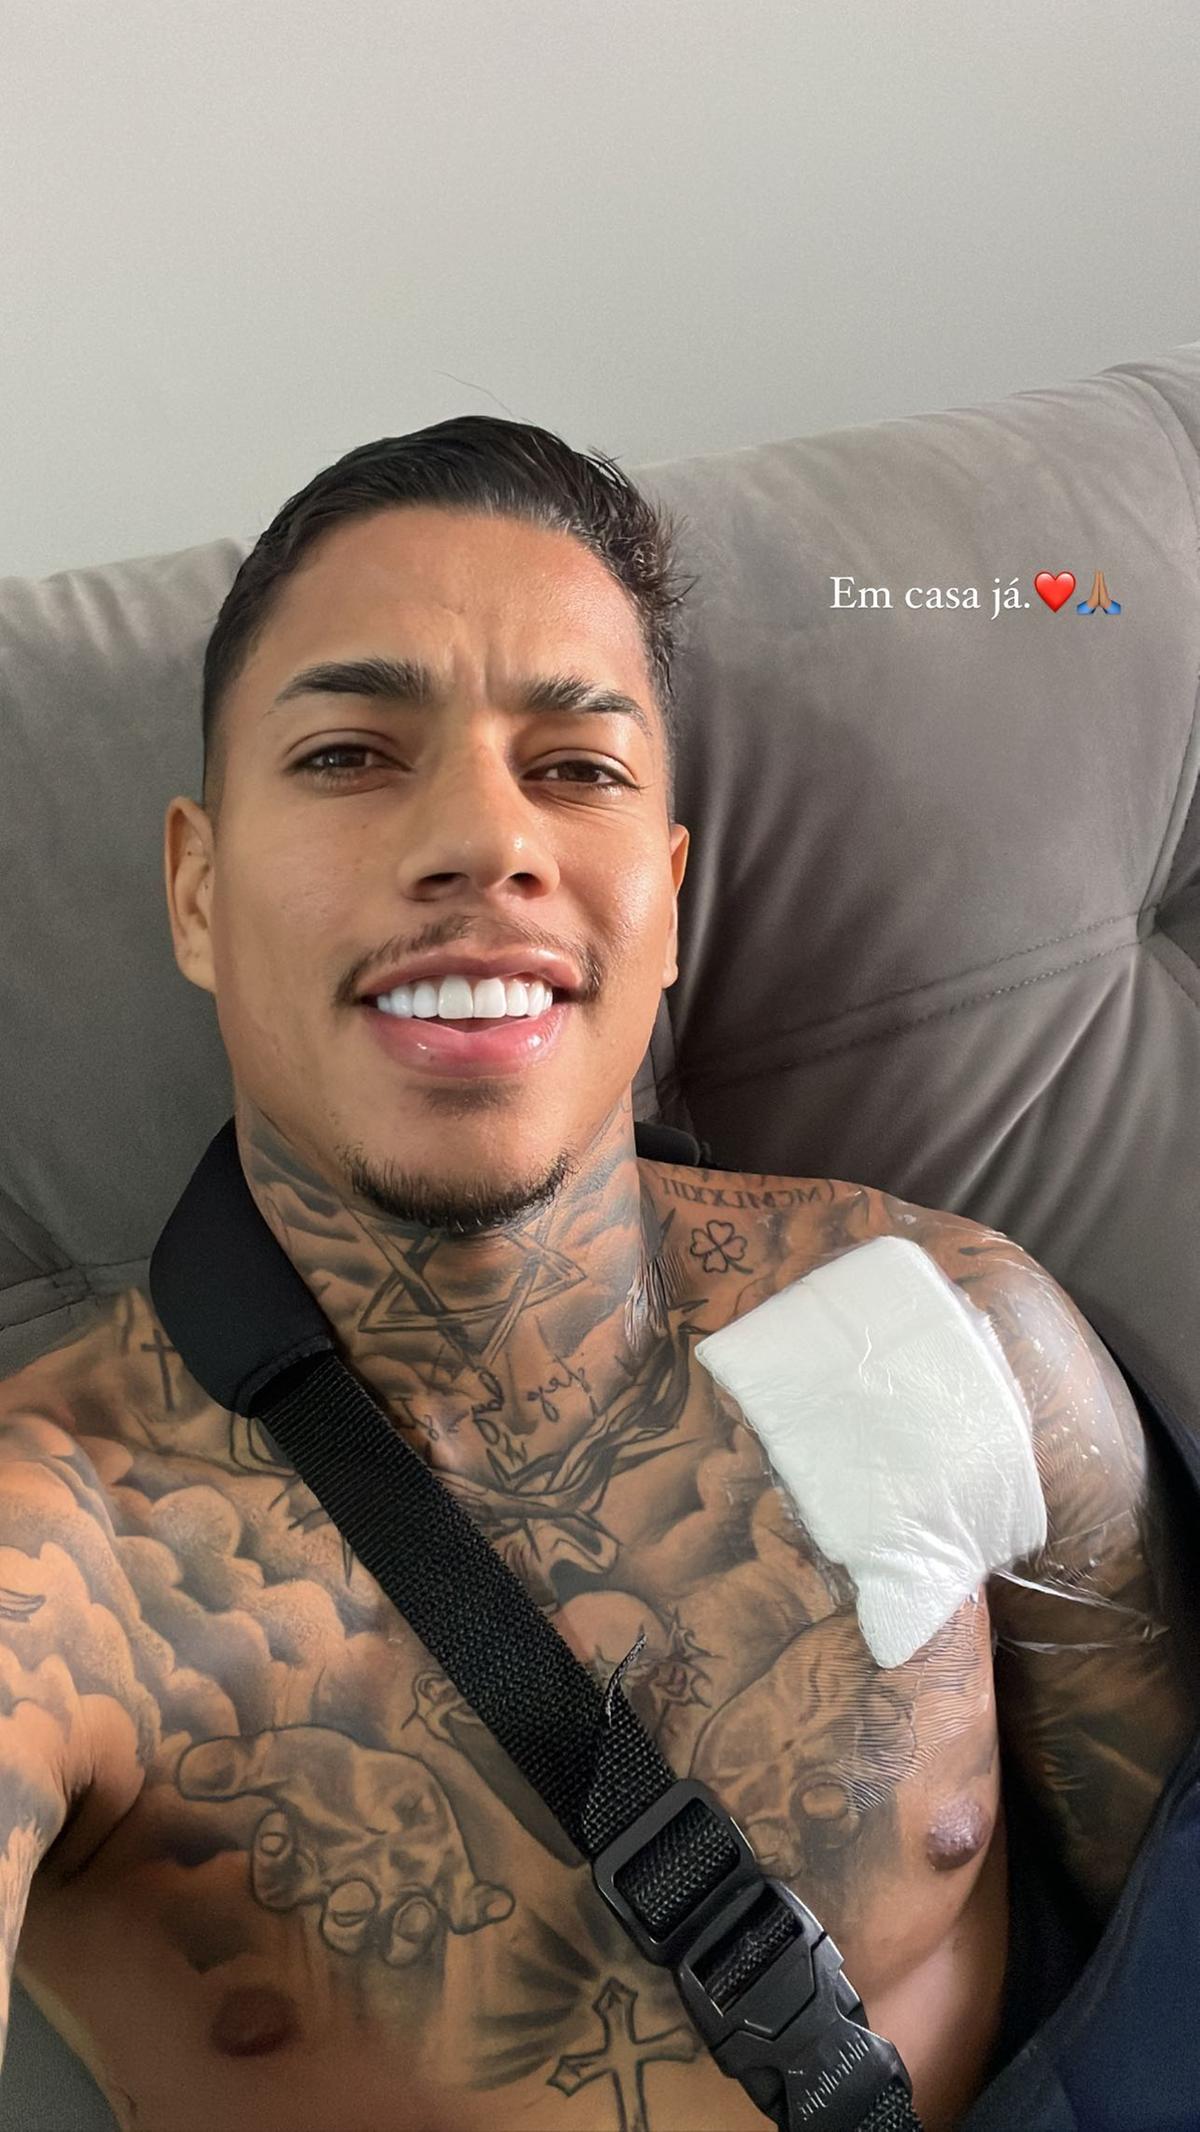 Matheusinho posta foto do ombro operado (Reprodução / Instagram Matheusinho)